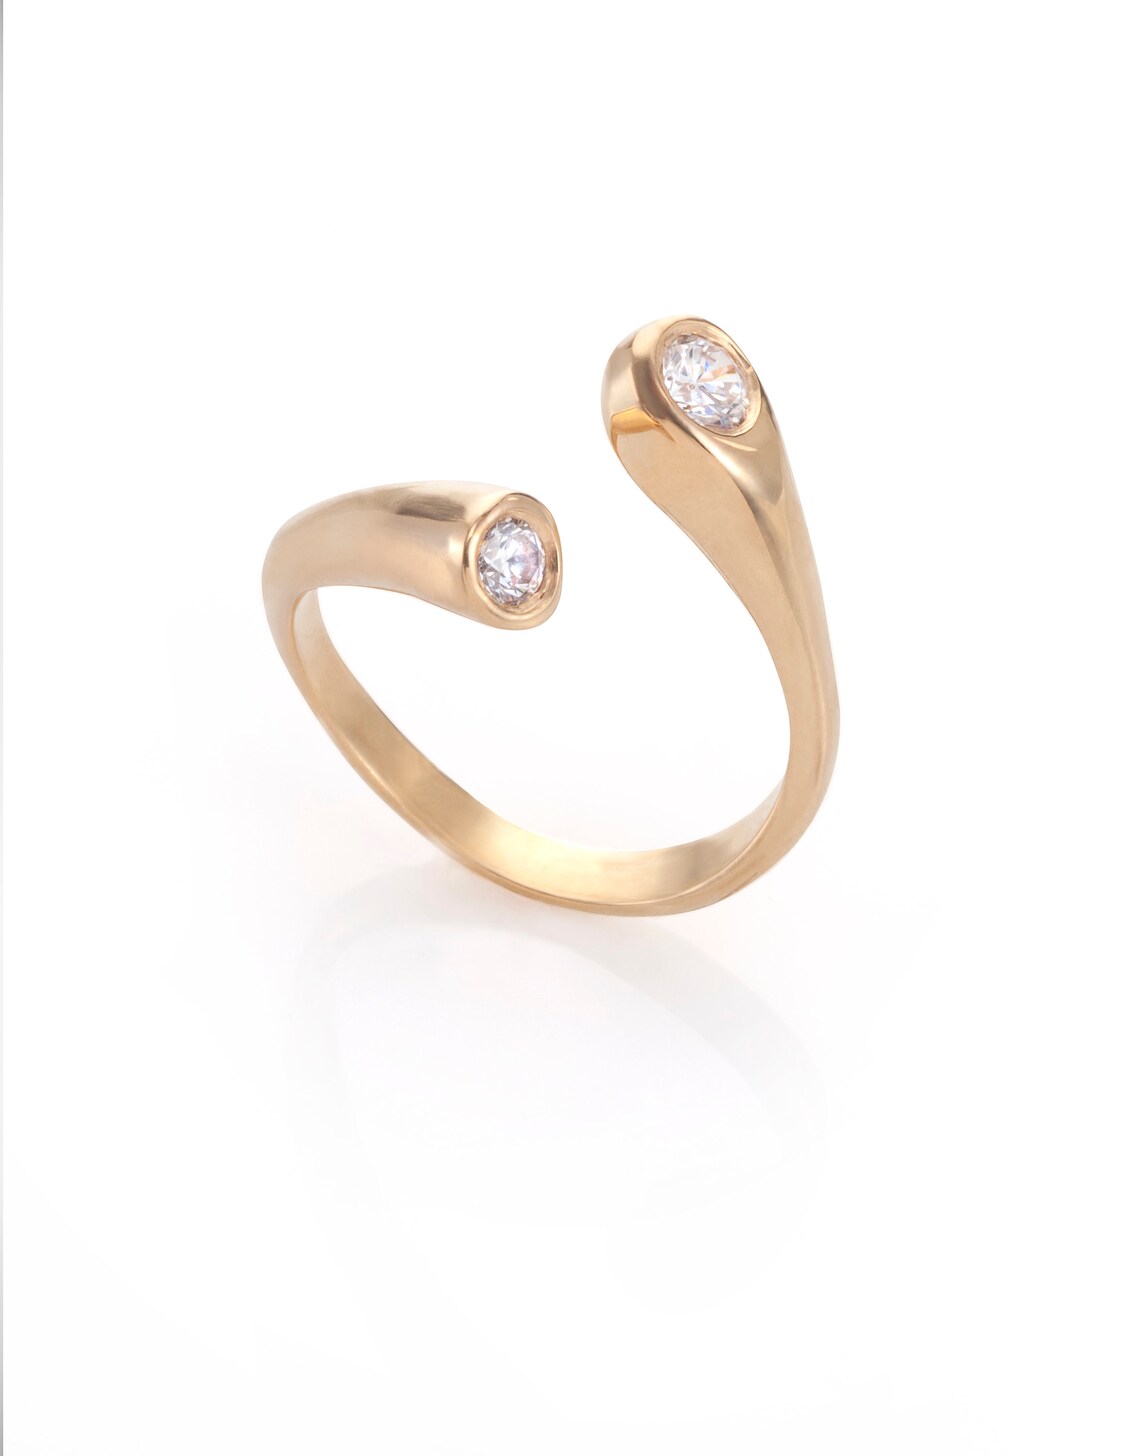 Hug Ring Boho Gold Ring for Women Two Diamond Stone Ring | Etsy